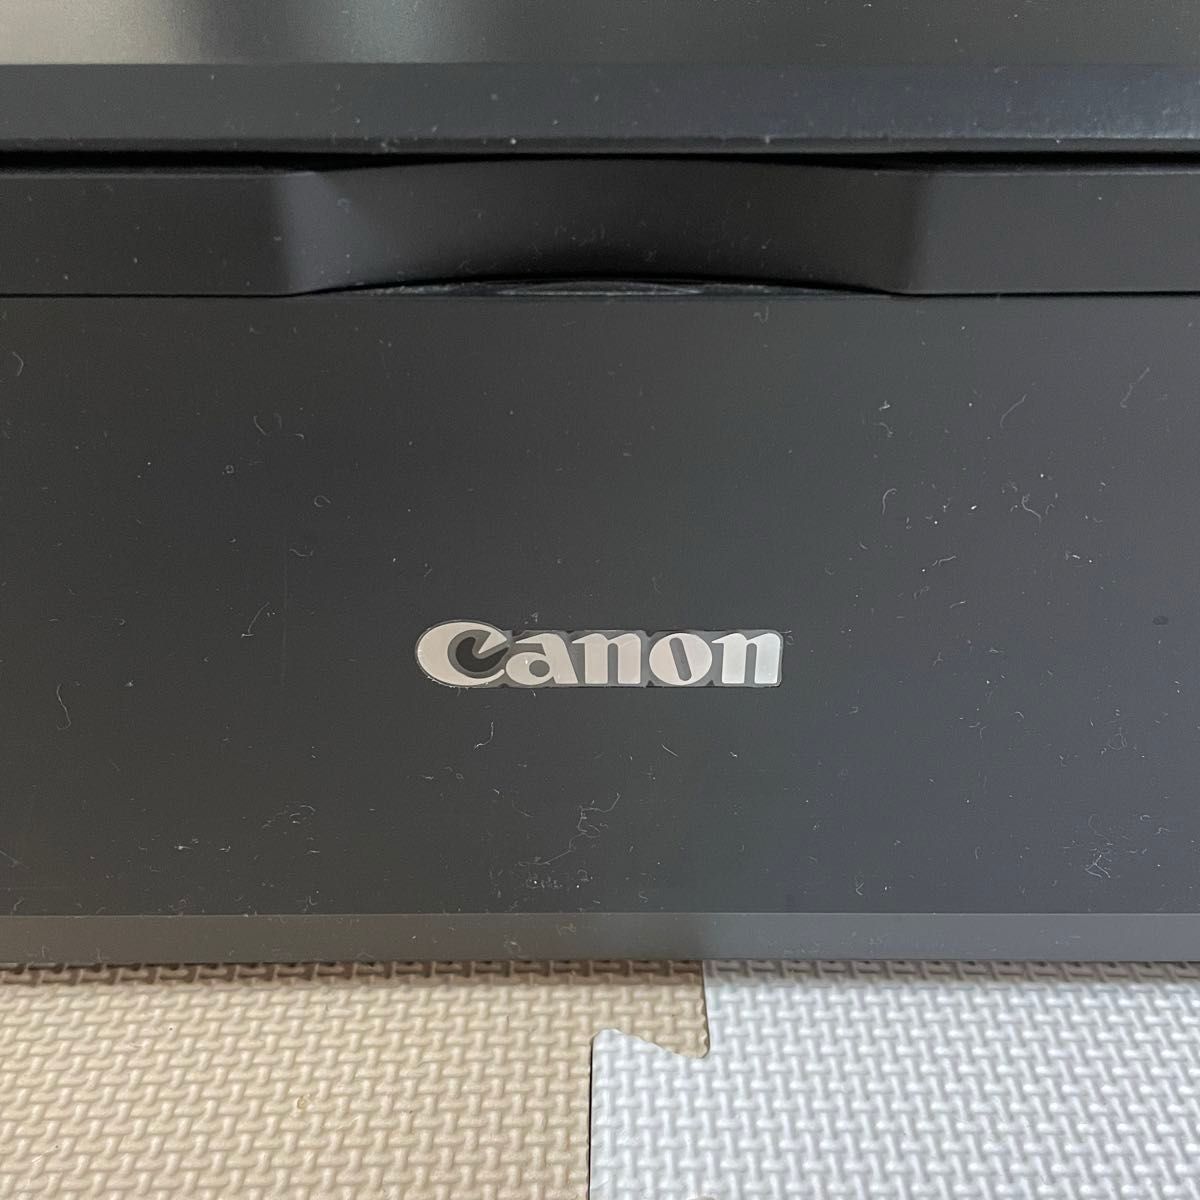 【ジャンク品】 Canon PIXUS プリンター MG3230 ブラック  キヤノン ピクサス